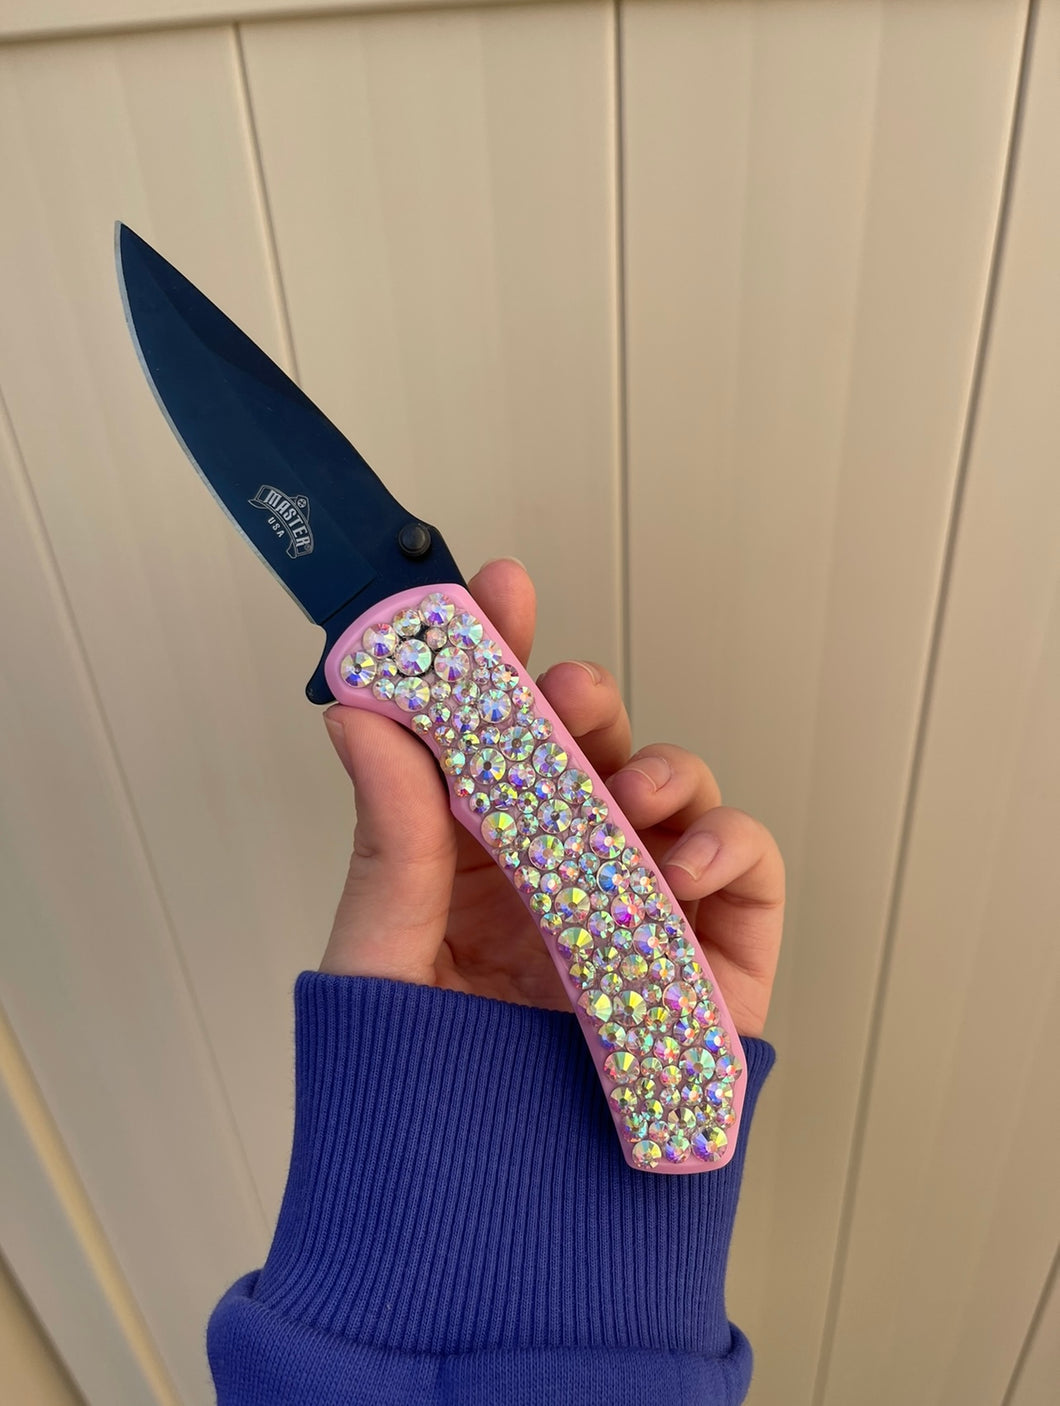 Pink Pocket Knife - Shop on Pinterest